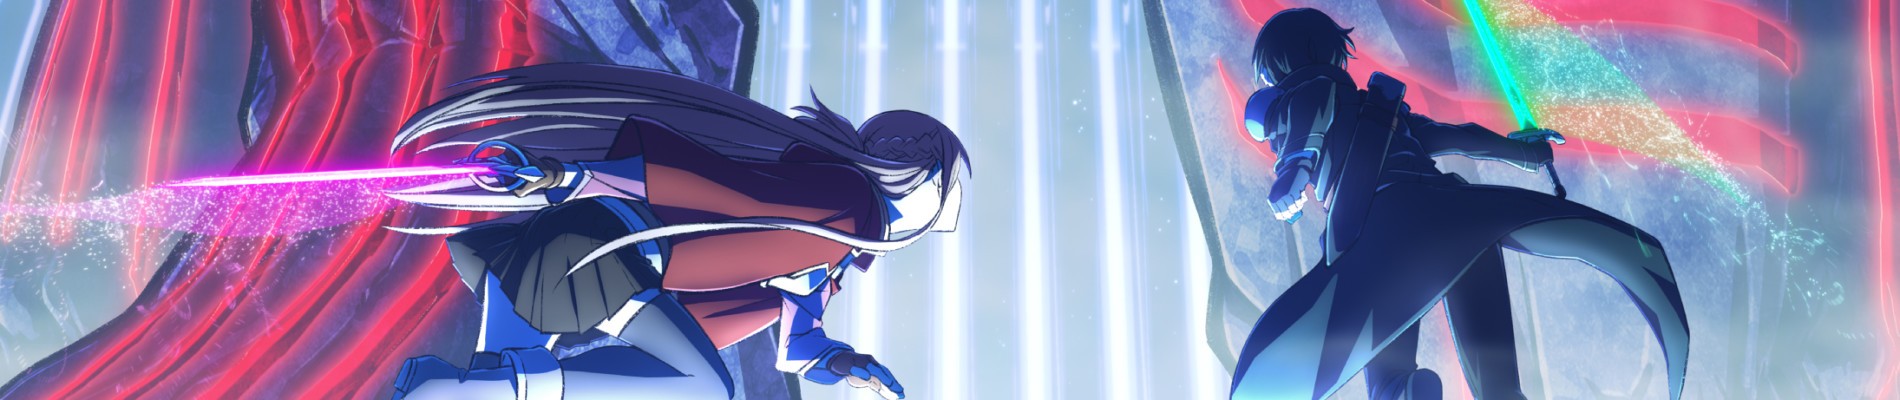 The Perilous Adventure of Asuna in Sword Art Online